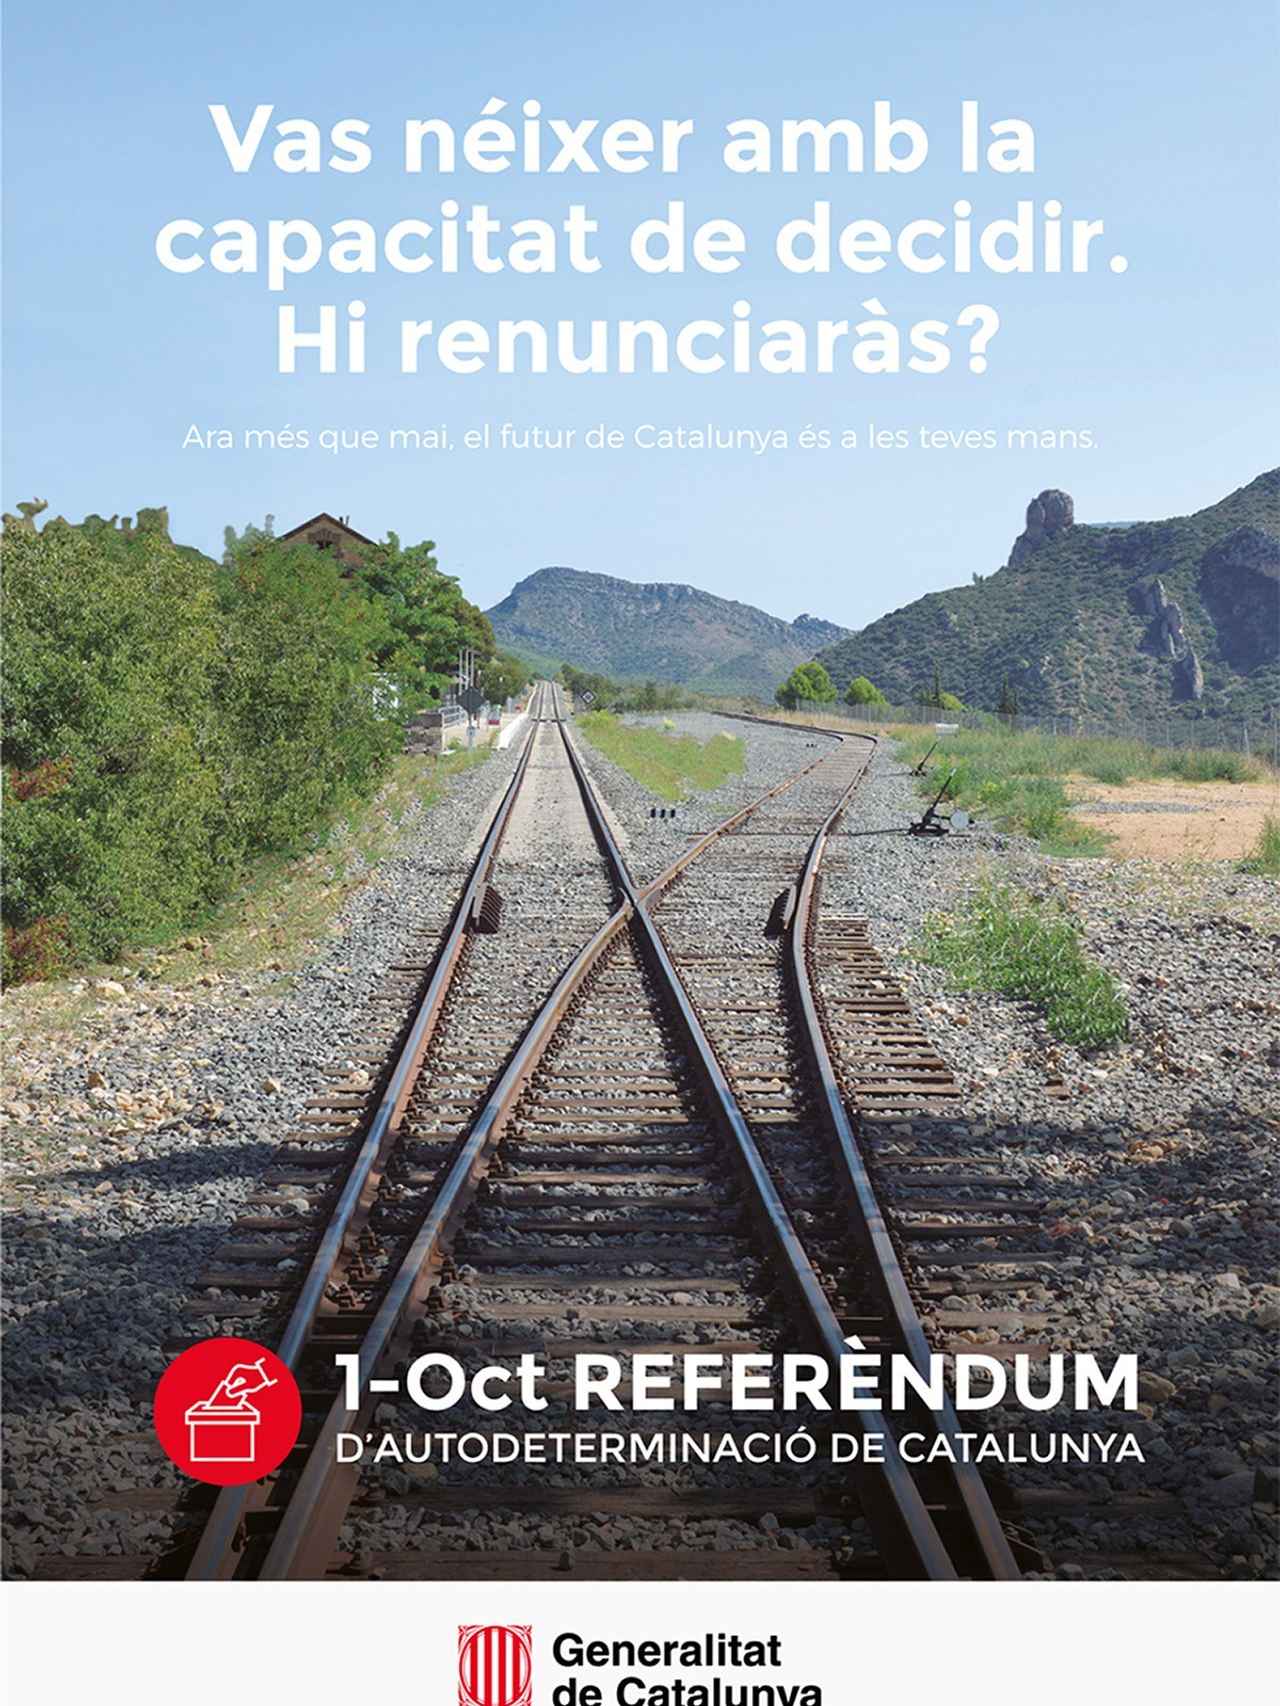 Anuncio de la Generalitat del reférendum del 1-O camuflado como campaña de promoción de valores cívicos.